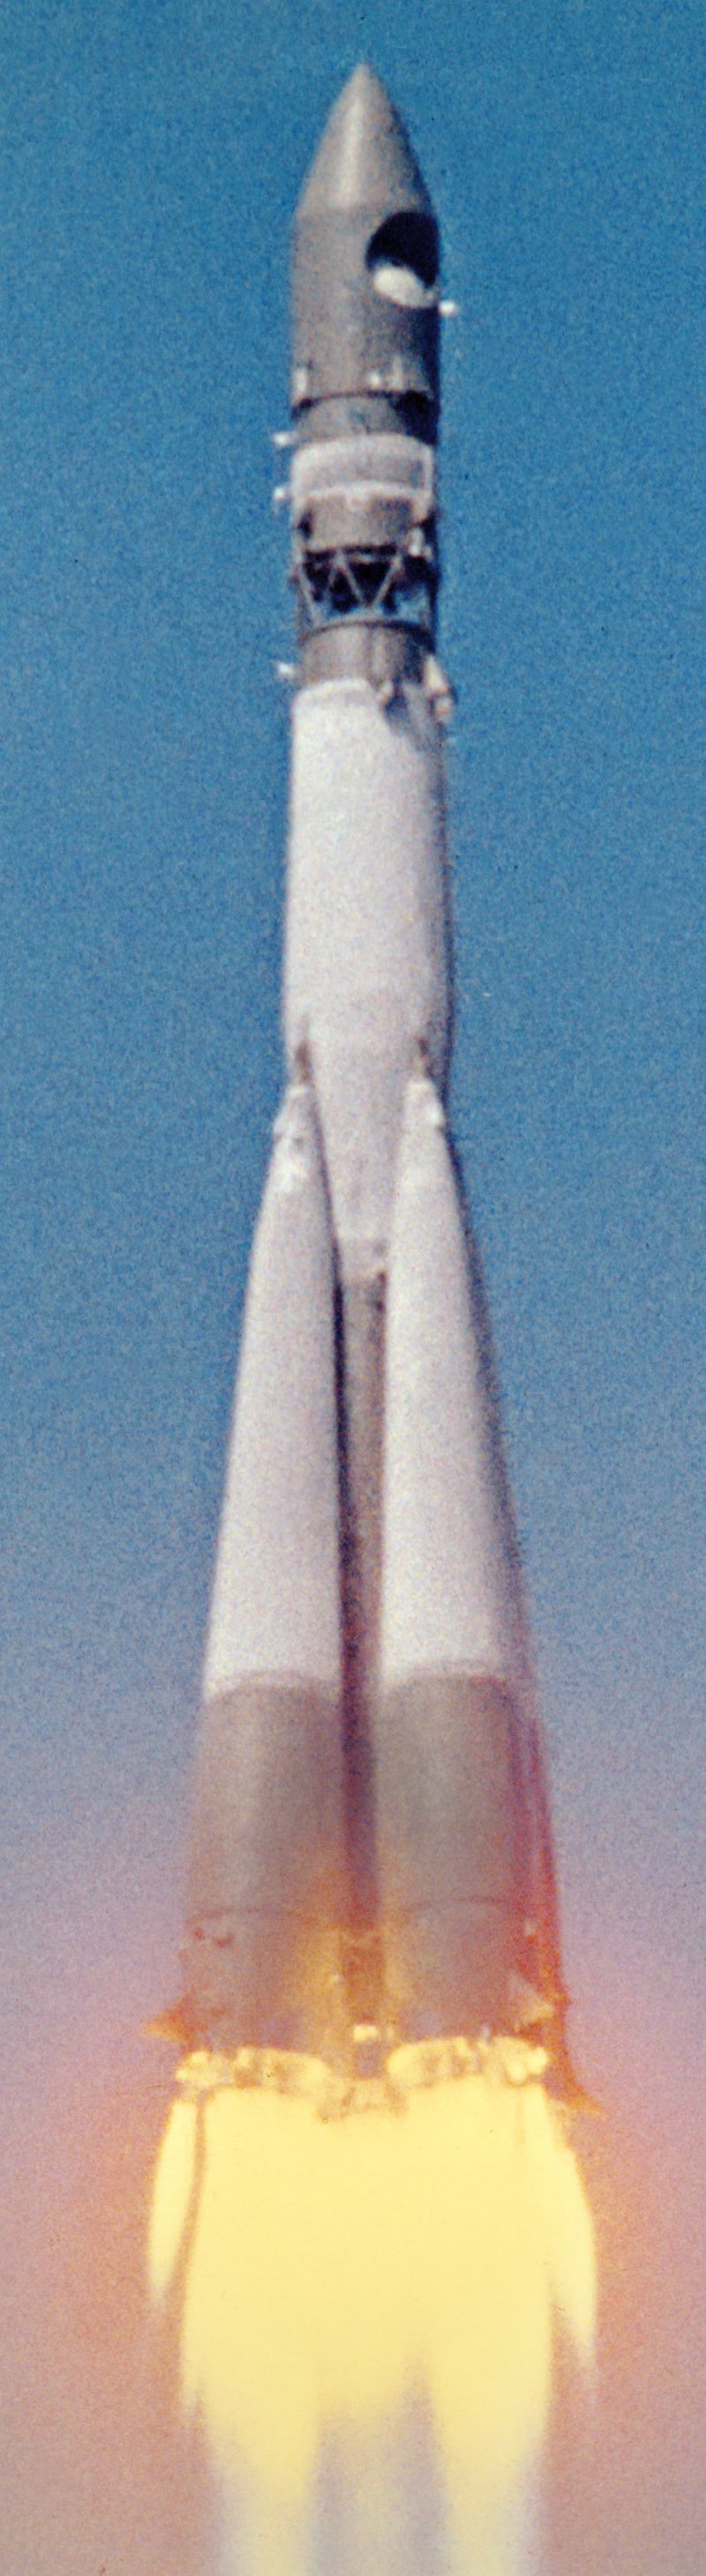 Первая ракета в космосе название. Ракета Юрия Гагарина Восток-1. Восток 1 Гагарин 1961. Байконур Восток 1 1961. Космический корабль Восток 1 Юрия Гагарина.